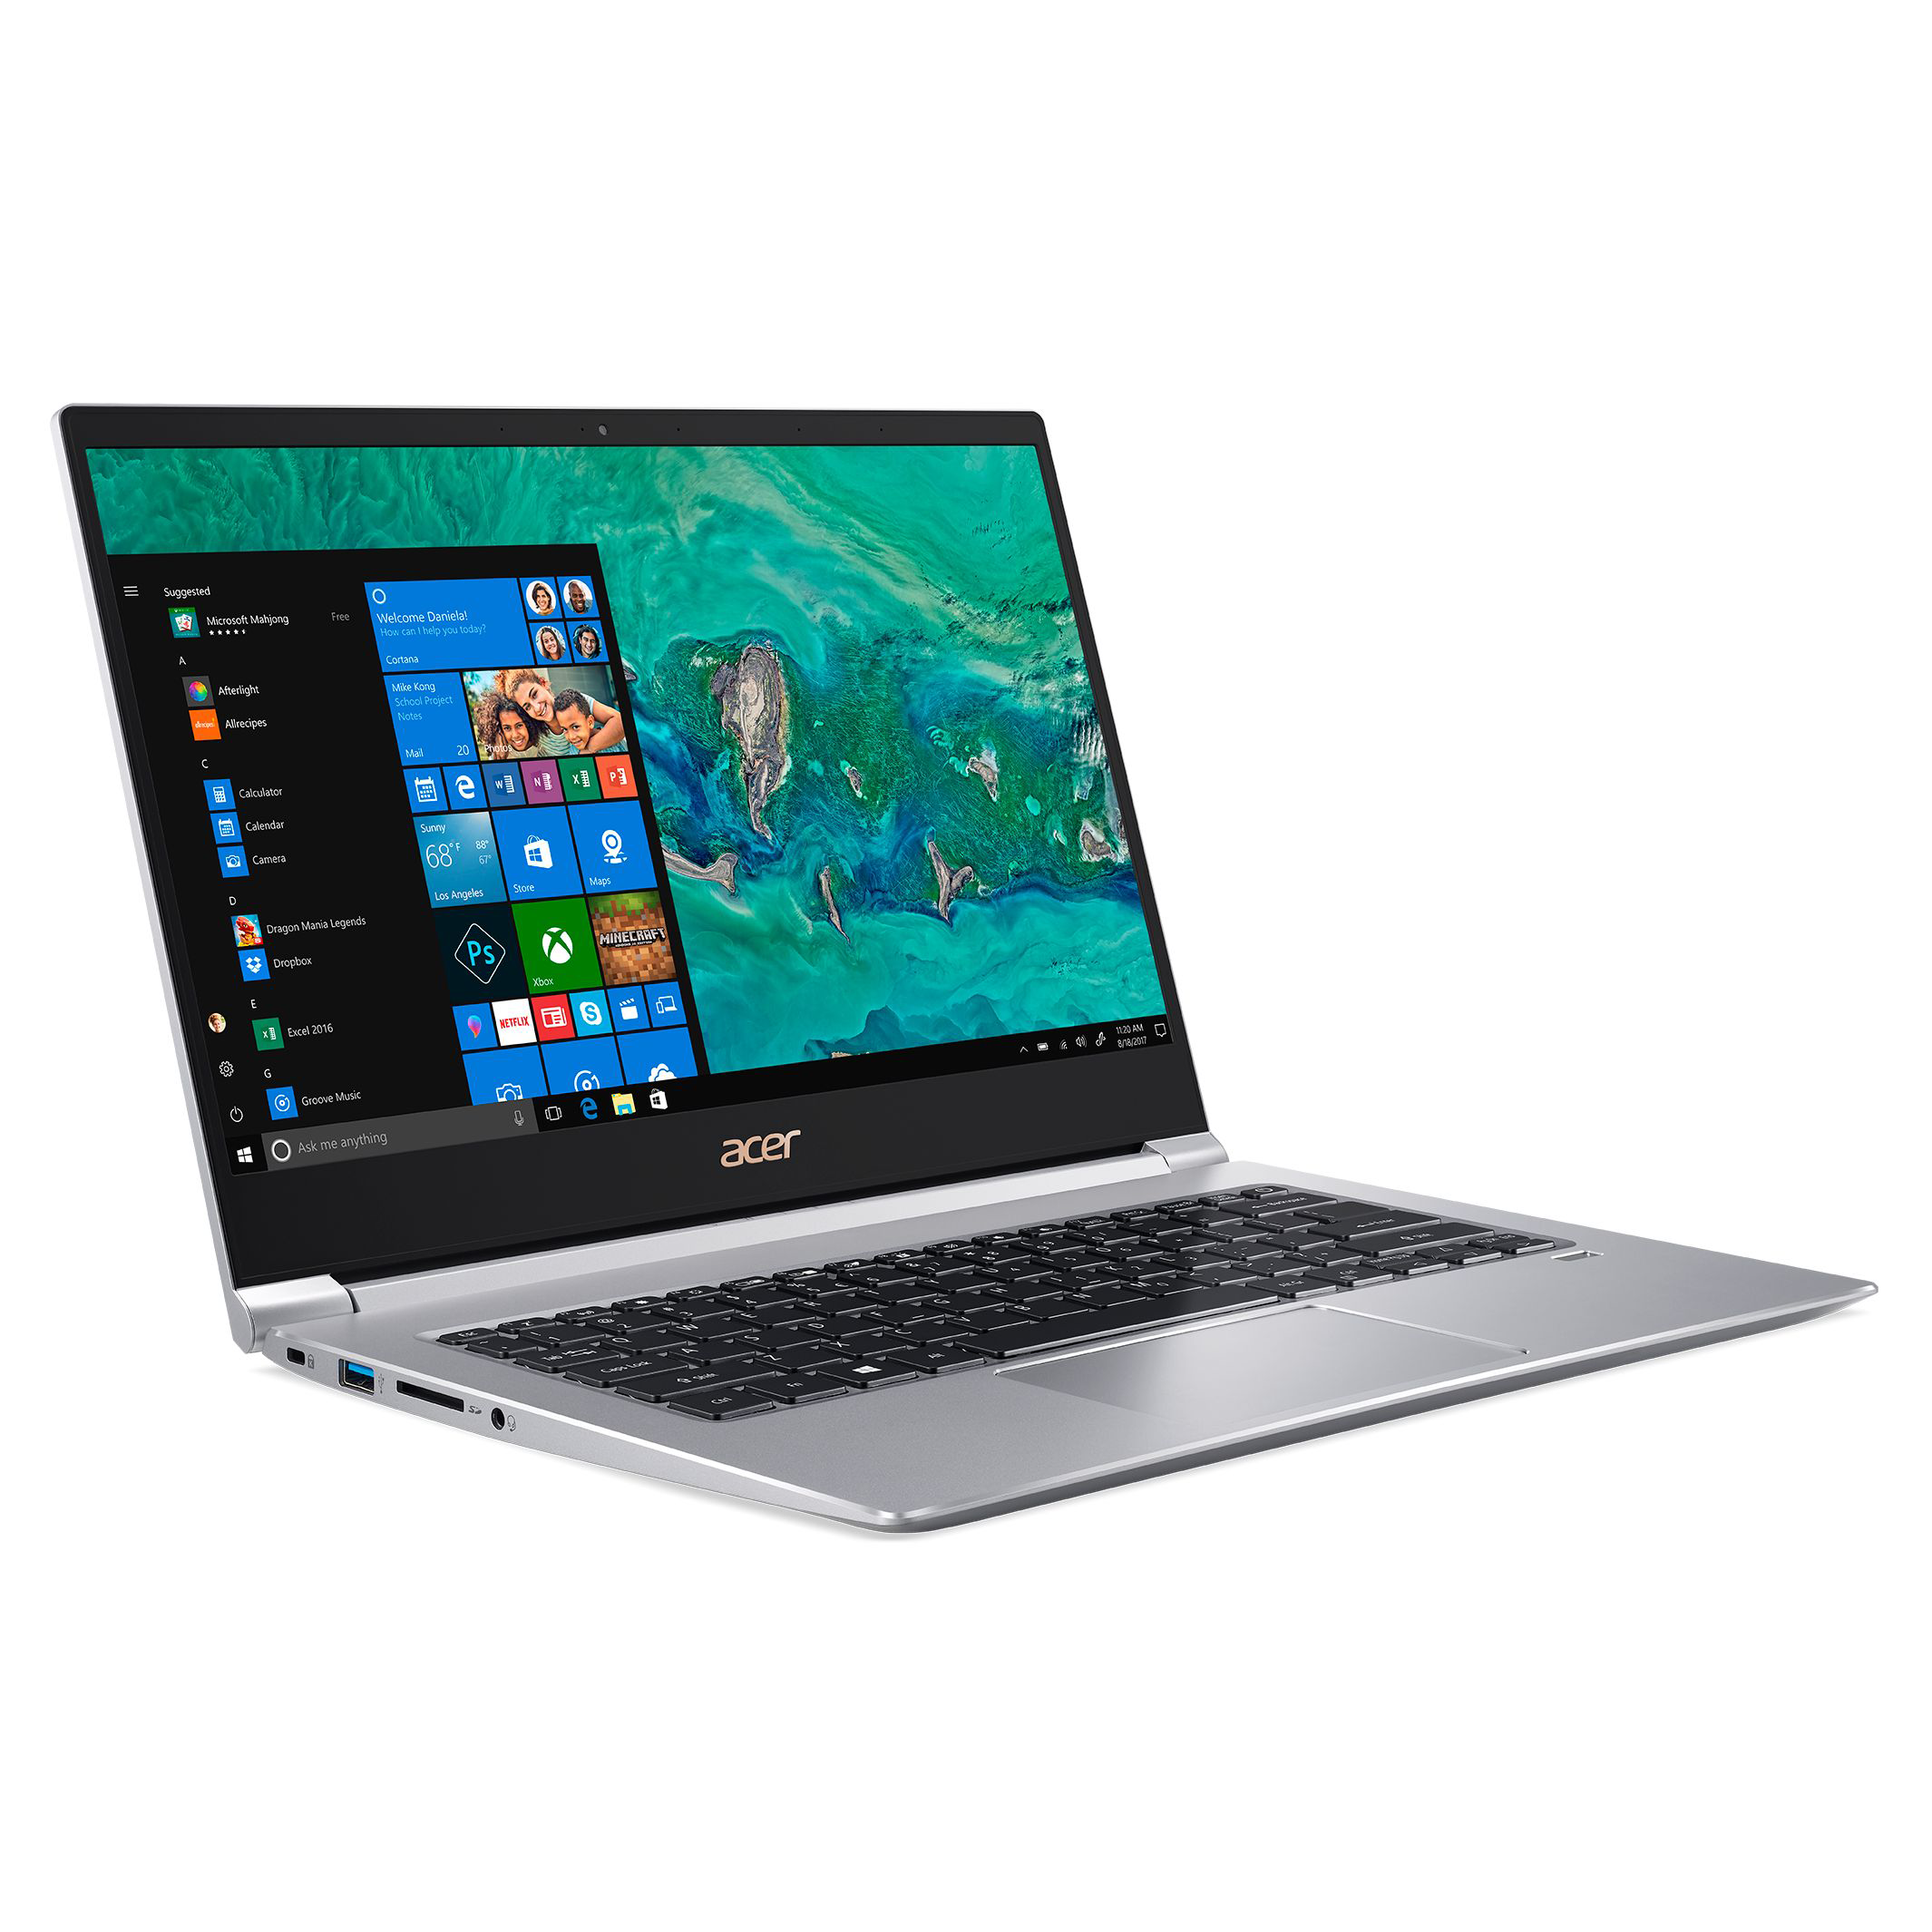 Acer Aspire 5750G Клас Б| Лаптопи втора ръка | iZone